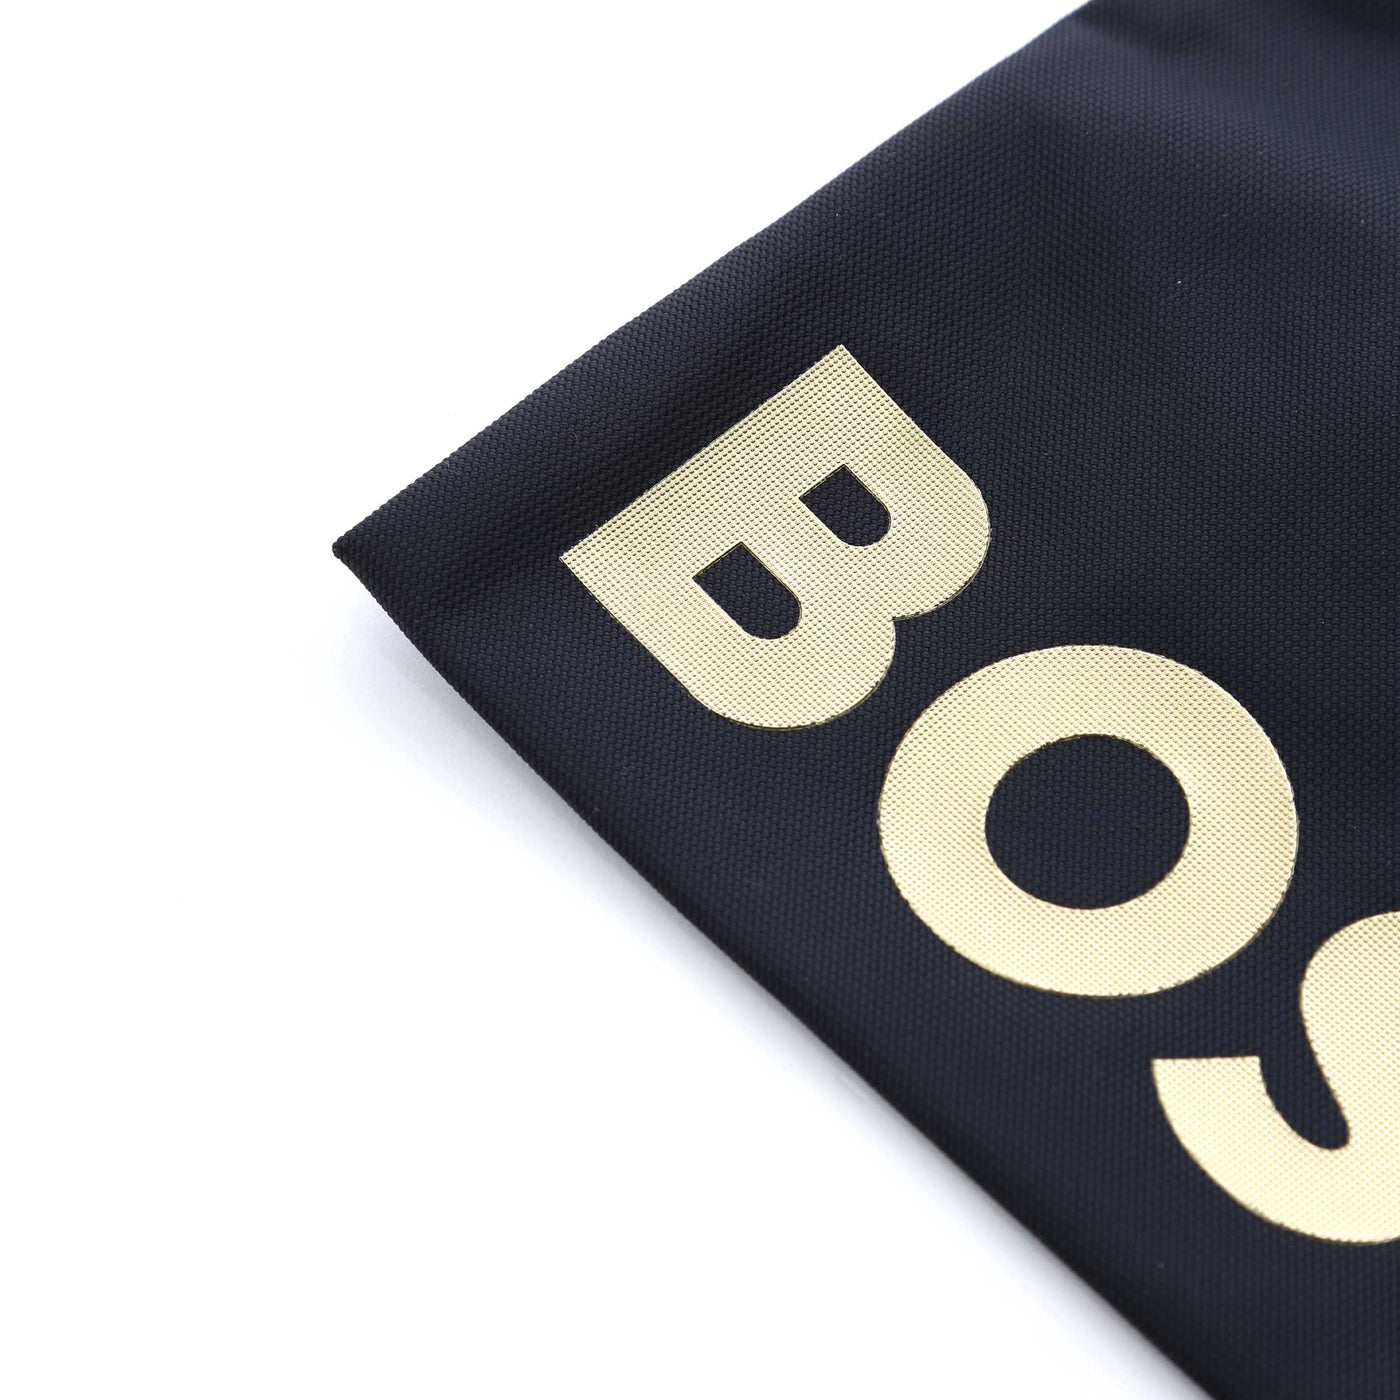 BOSS Catch Y S Zip Env Bag in Navy & Gold